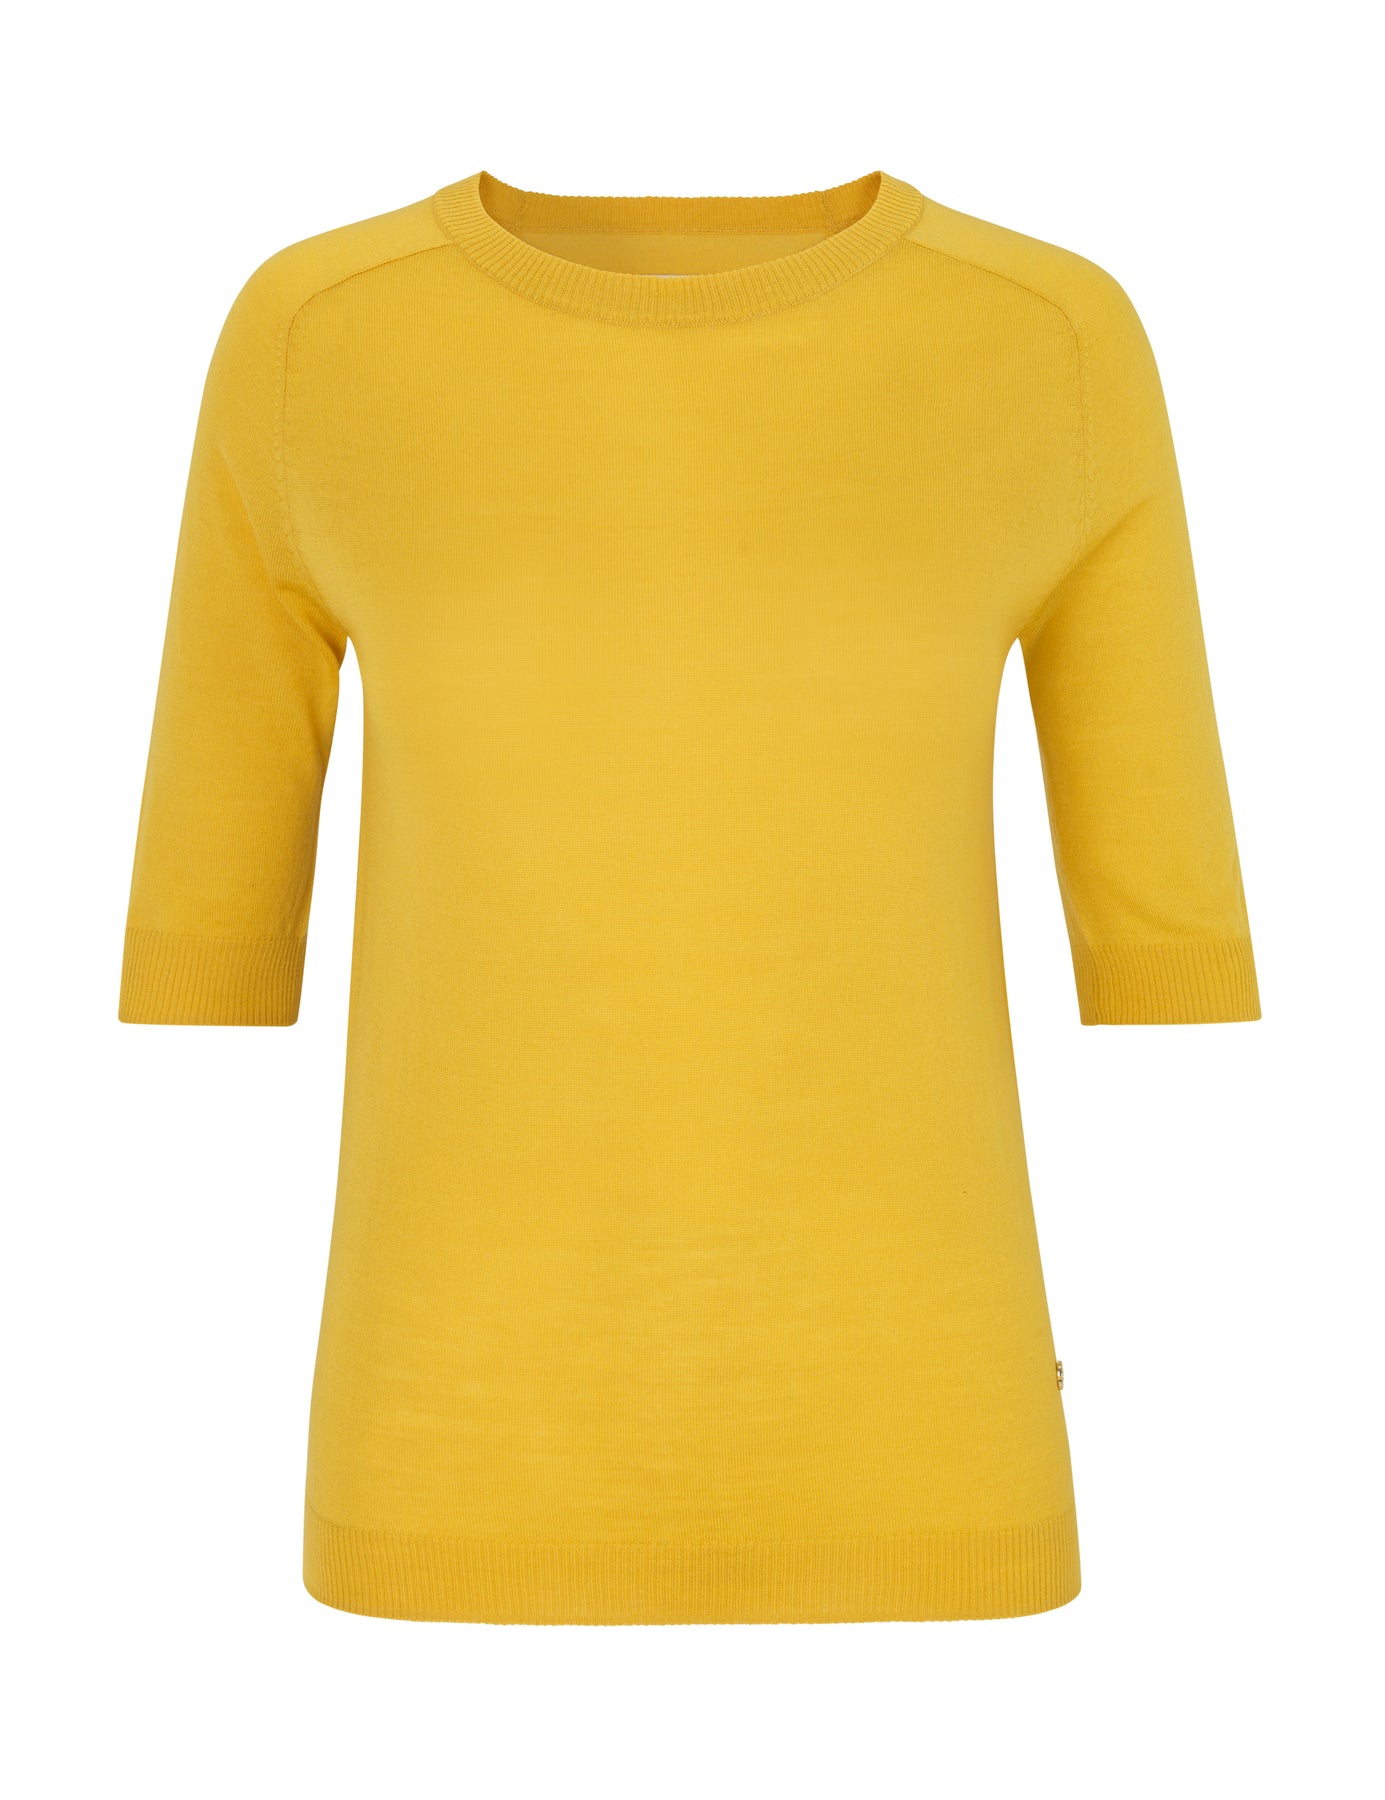 Day Whitney - Lemon Curry - DAY - T-skjorter & Topper - VILLOID.no